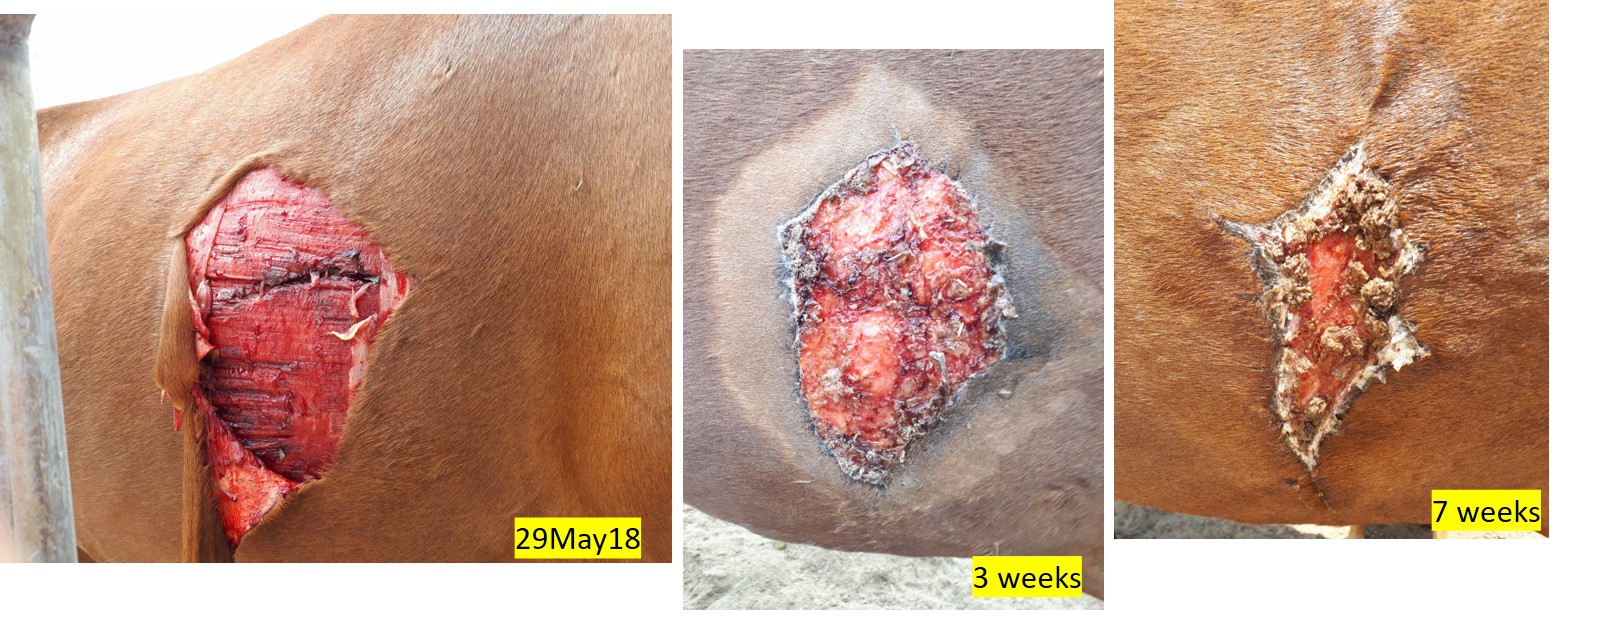 wheatgrass heals horse wound